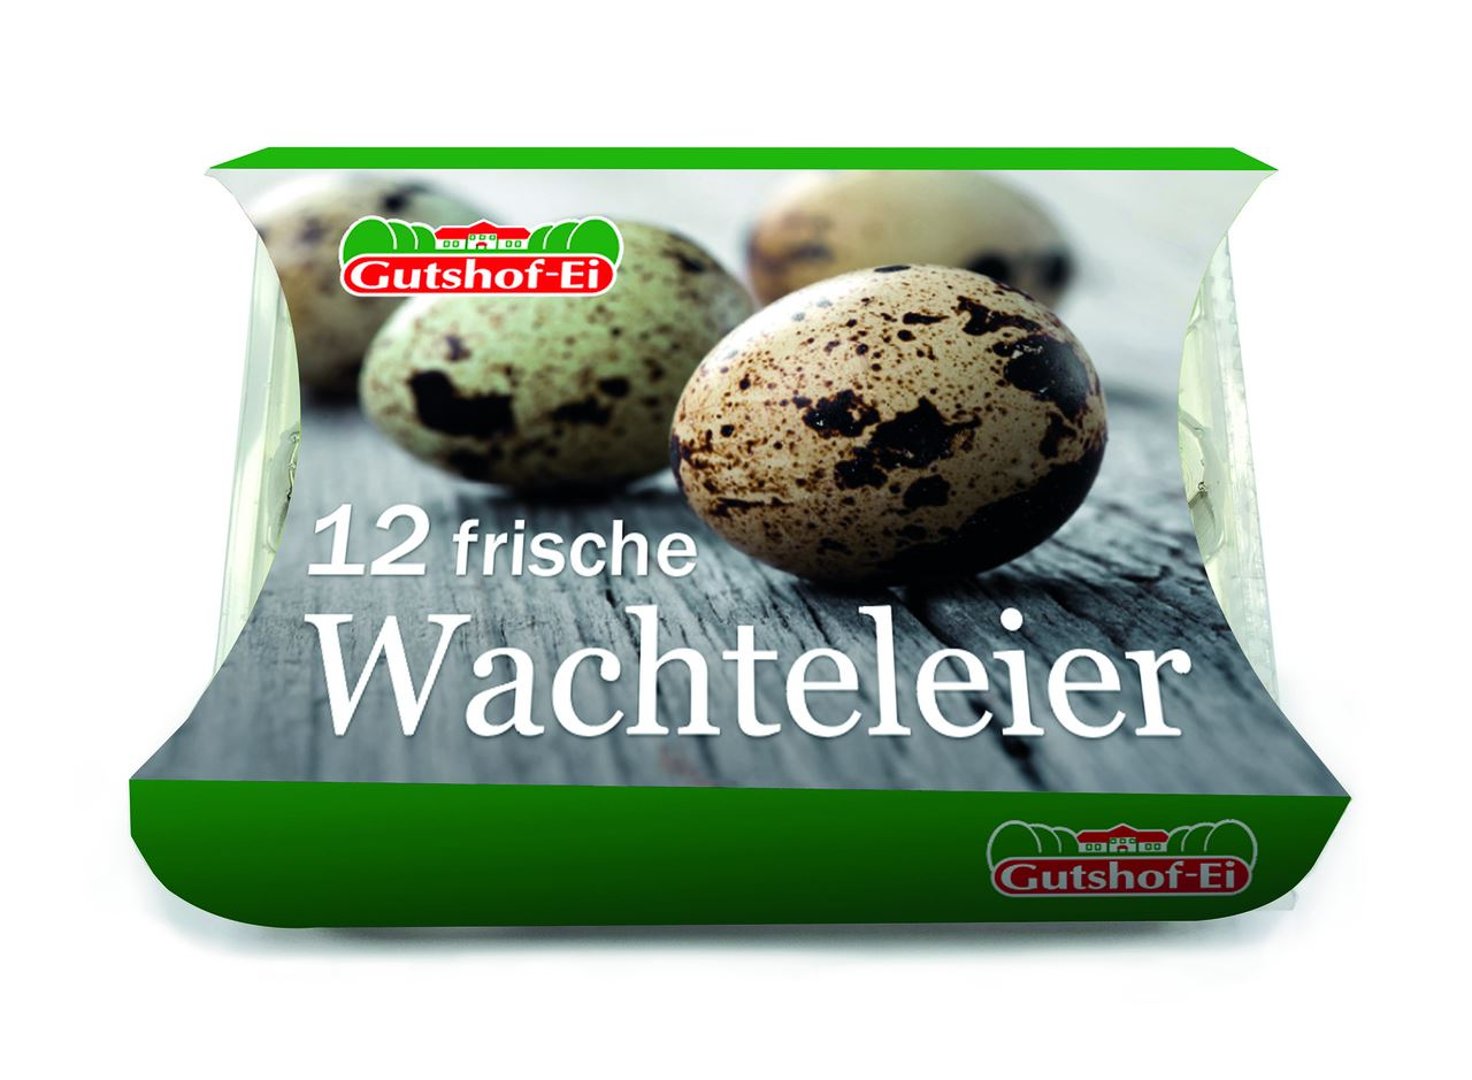 Gutshof-Ei Wachteleier - 12 x 12 Stück Schachtel